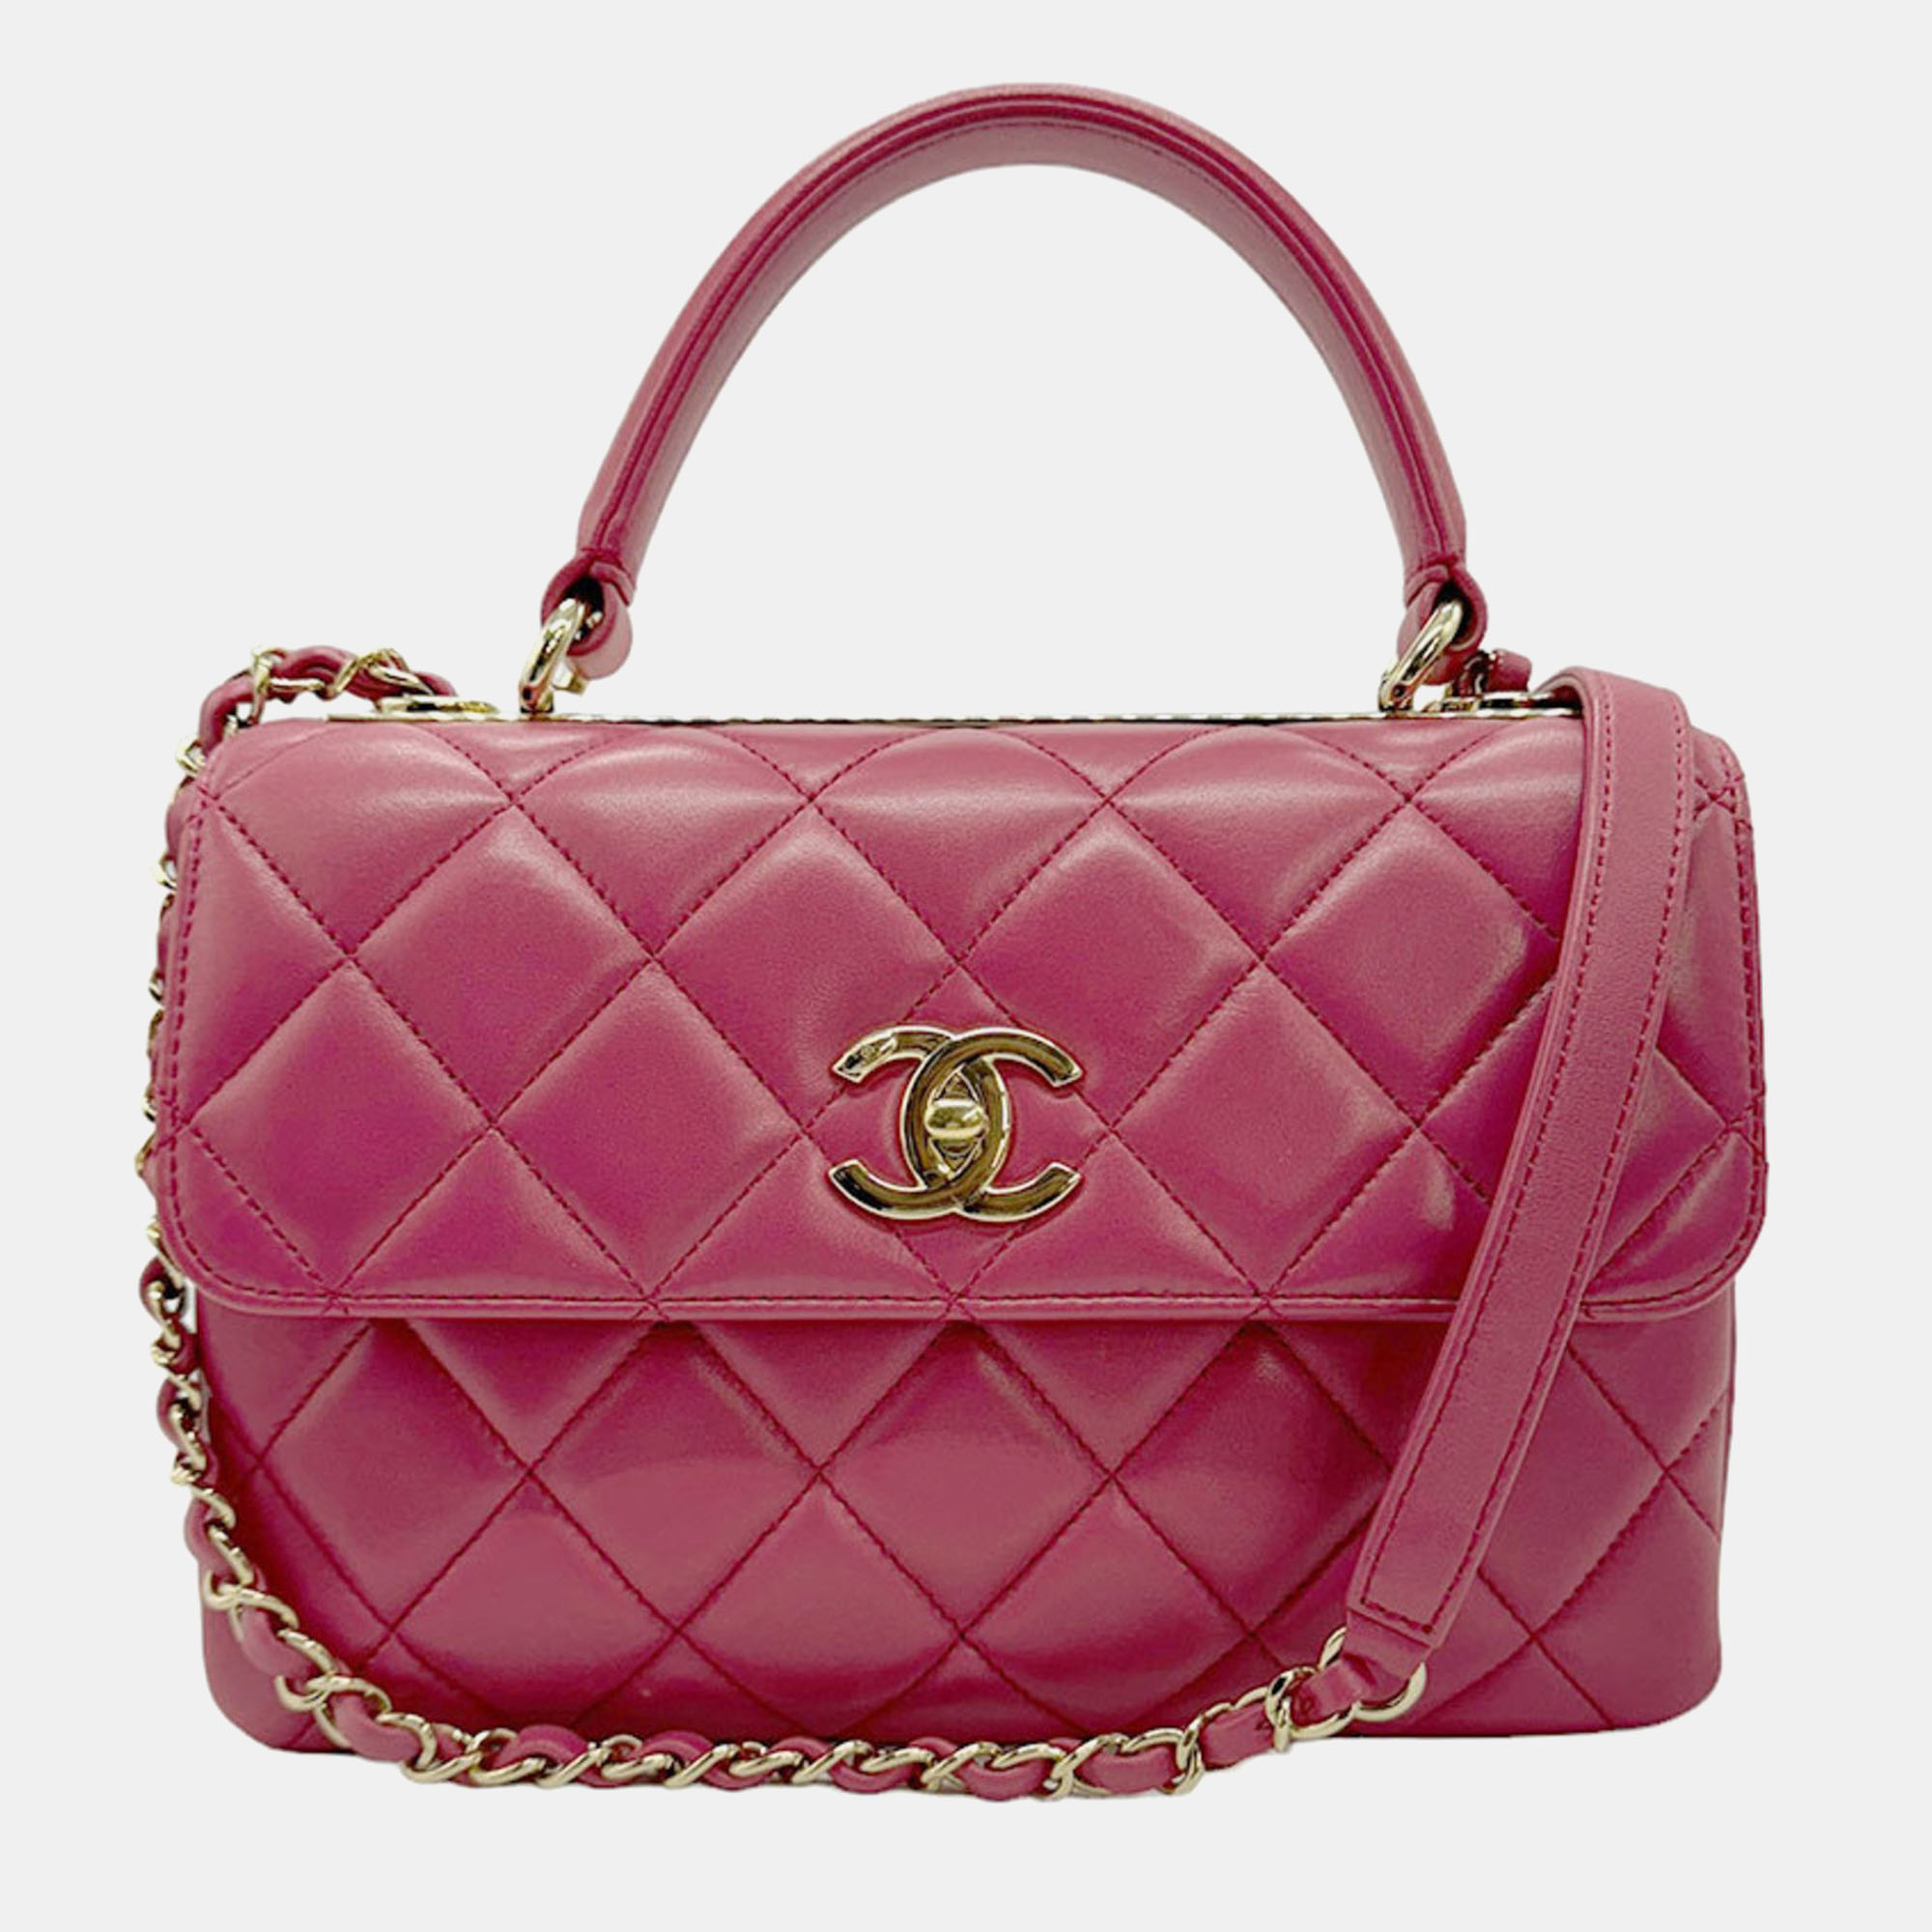 Chanel pink leather medium trendy cc shoulder bag